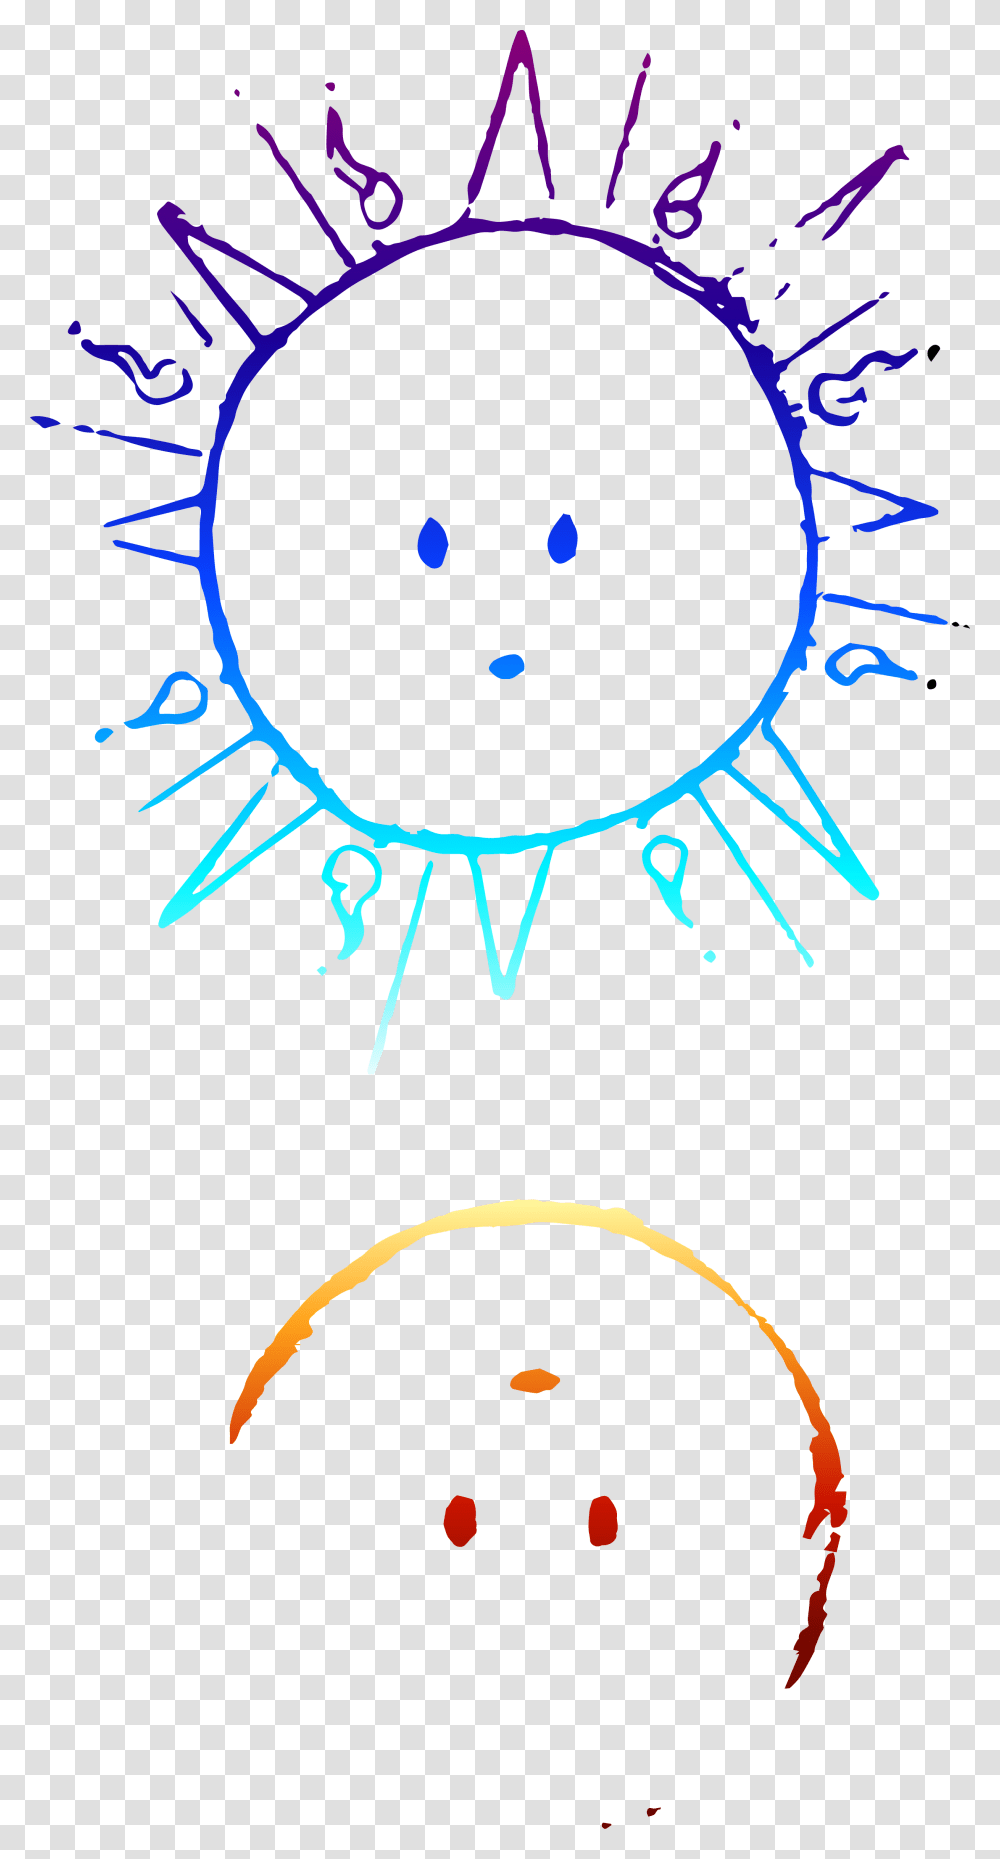 Cartoon Sun And Moon, Outdoors, Nature, Water Transparent Png